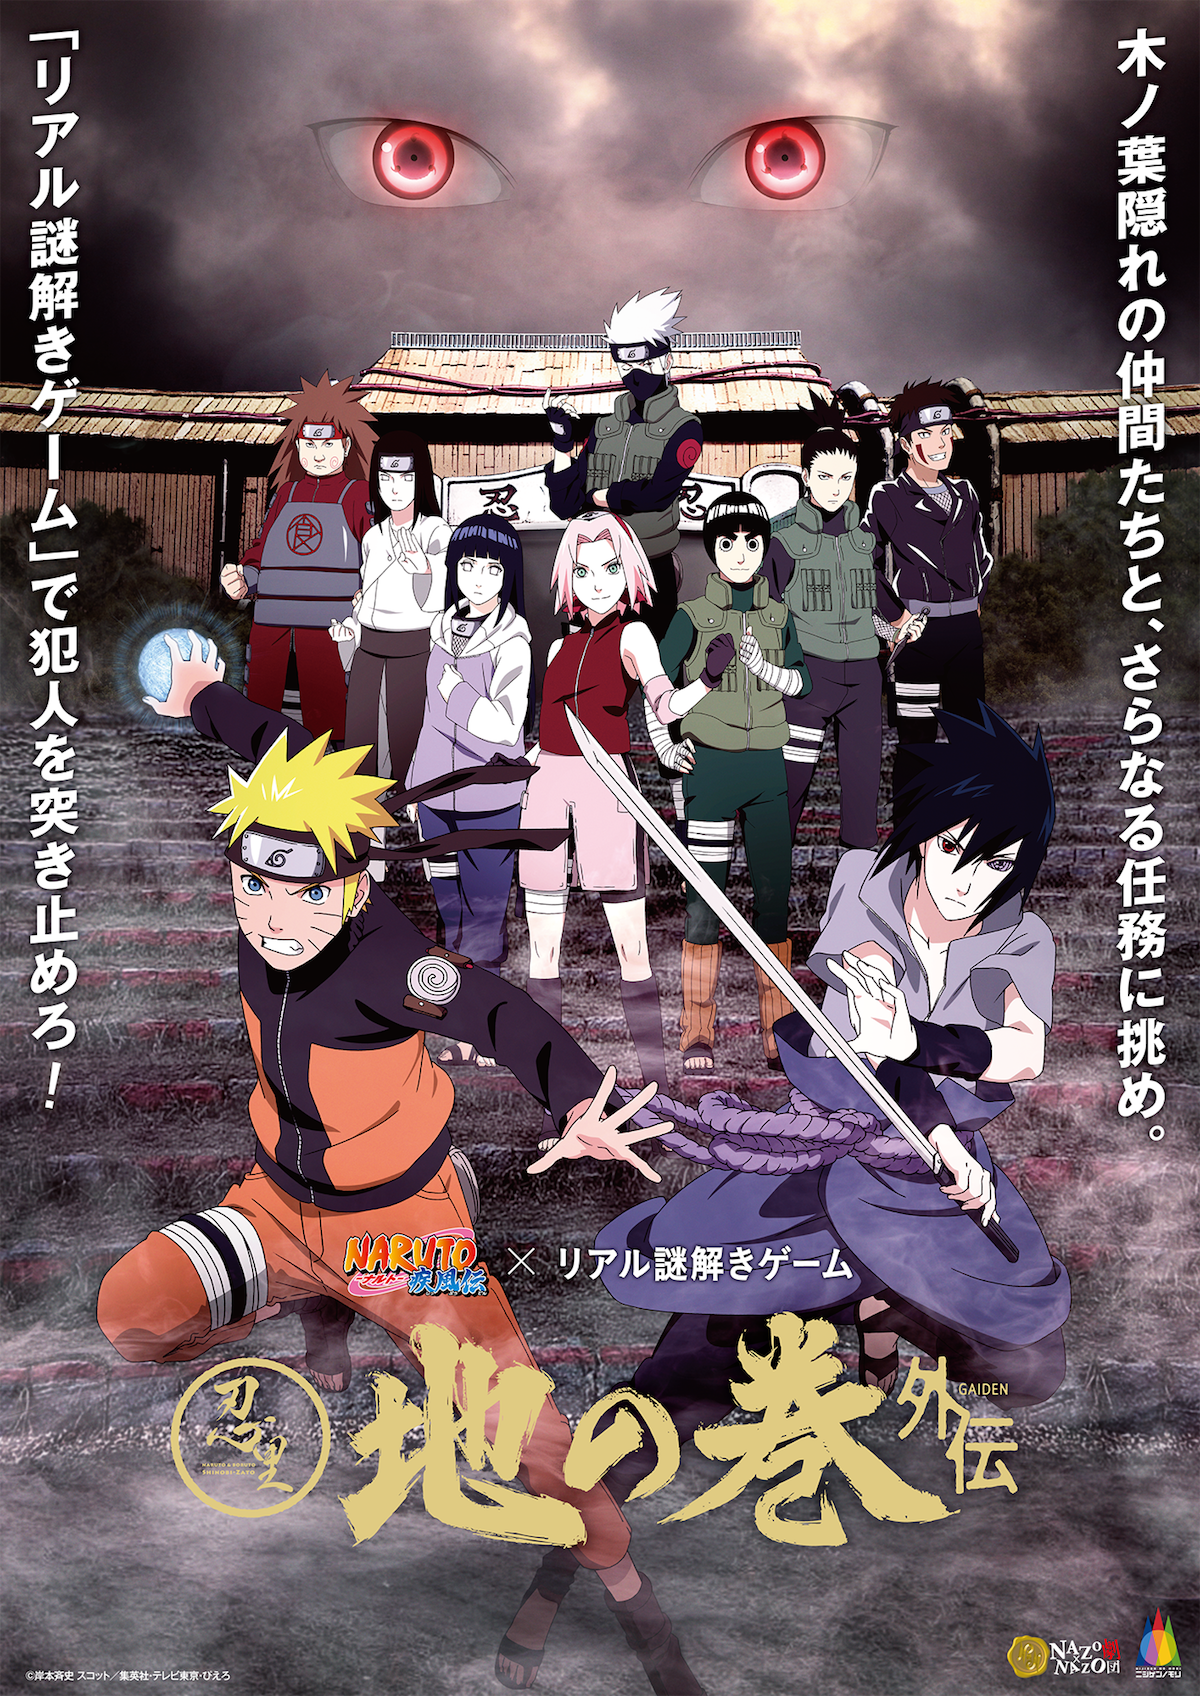 アニメ Naruto ナルト の世界観を再現したテーマエリアを周遊 リアル謎解きゲーム9月14日からニジゲンノモリにて開催 Naruto ファン必見 登場人物になる没入型 イベント限定ストーリー 株式会社ハレガケのプレスリリース